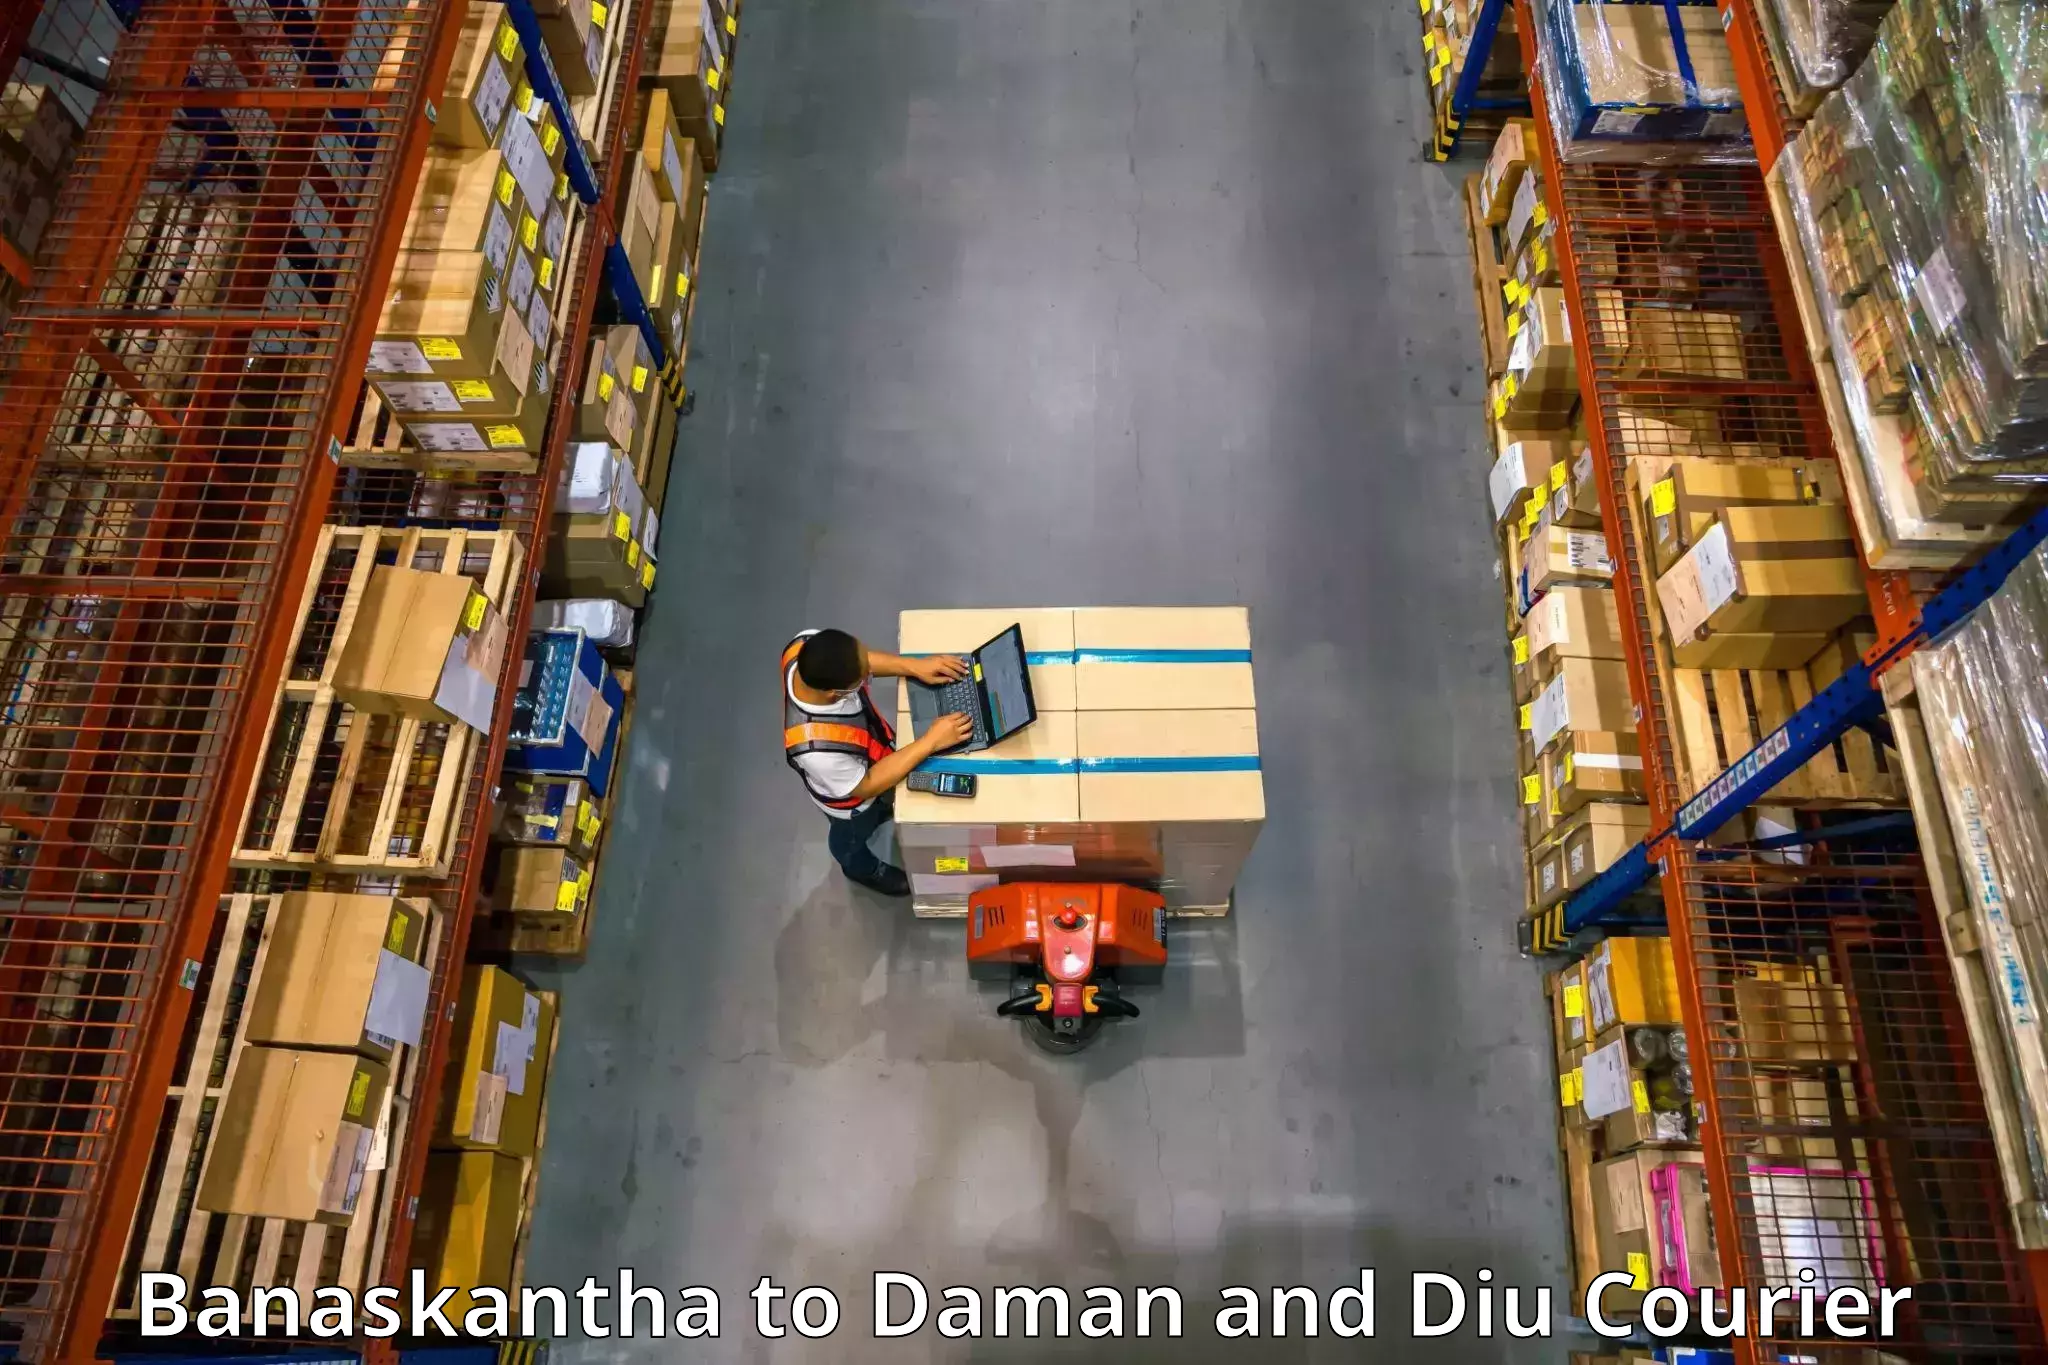 Efficient packing and moving Banaskantha to Daman